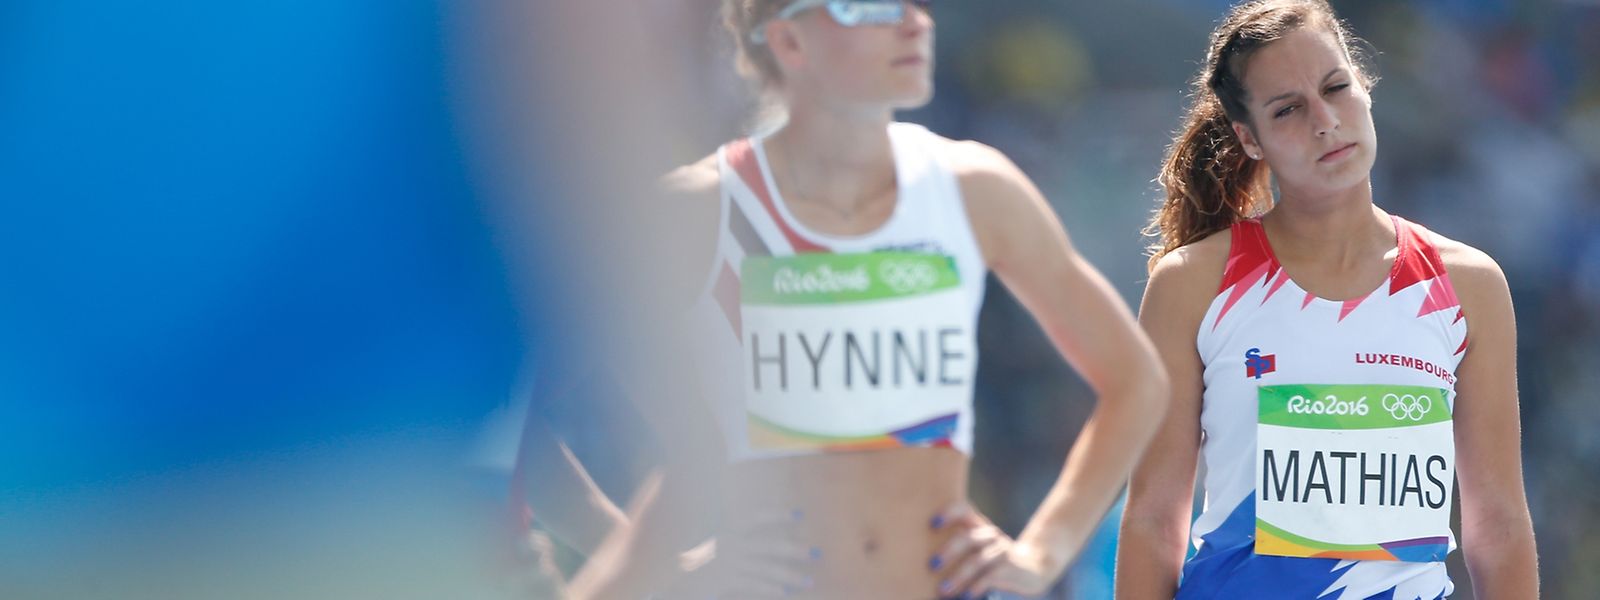 Charline Mathias wurde bei ihrem Vorlauf über 800 m abgeschlagen Letzte.